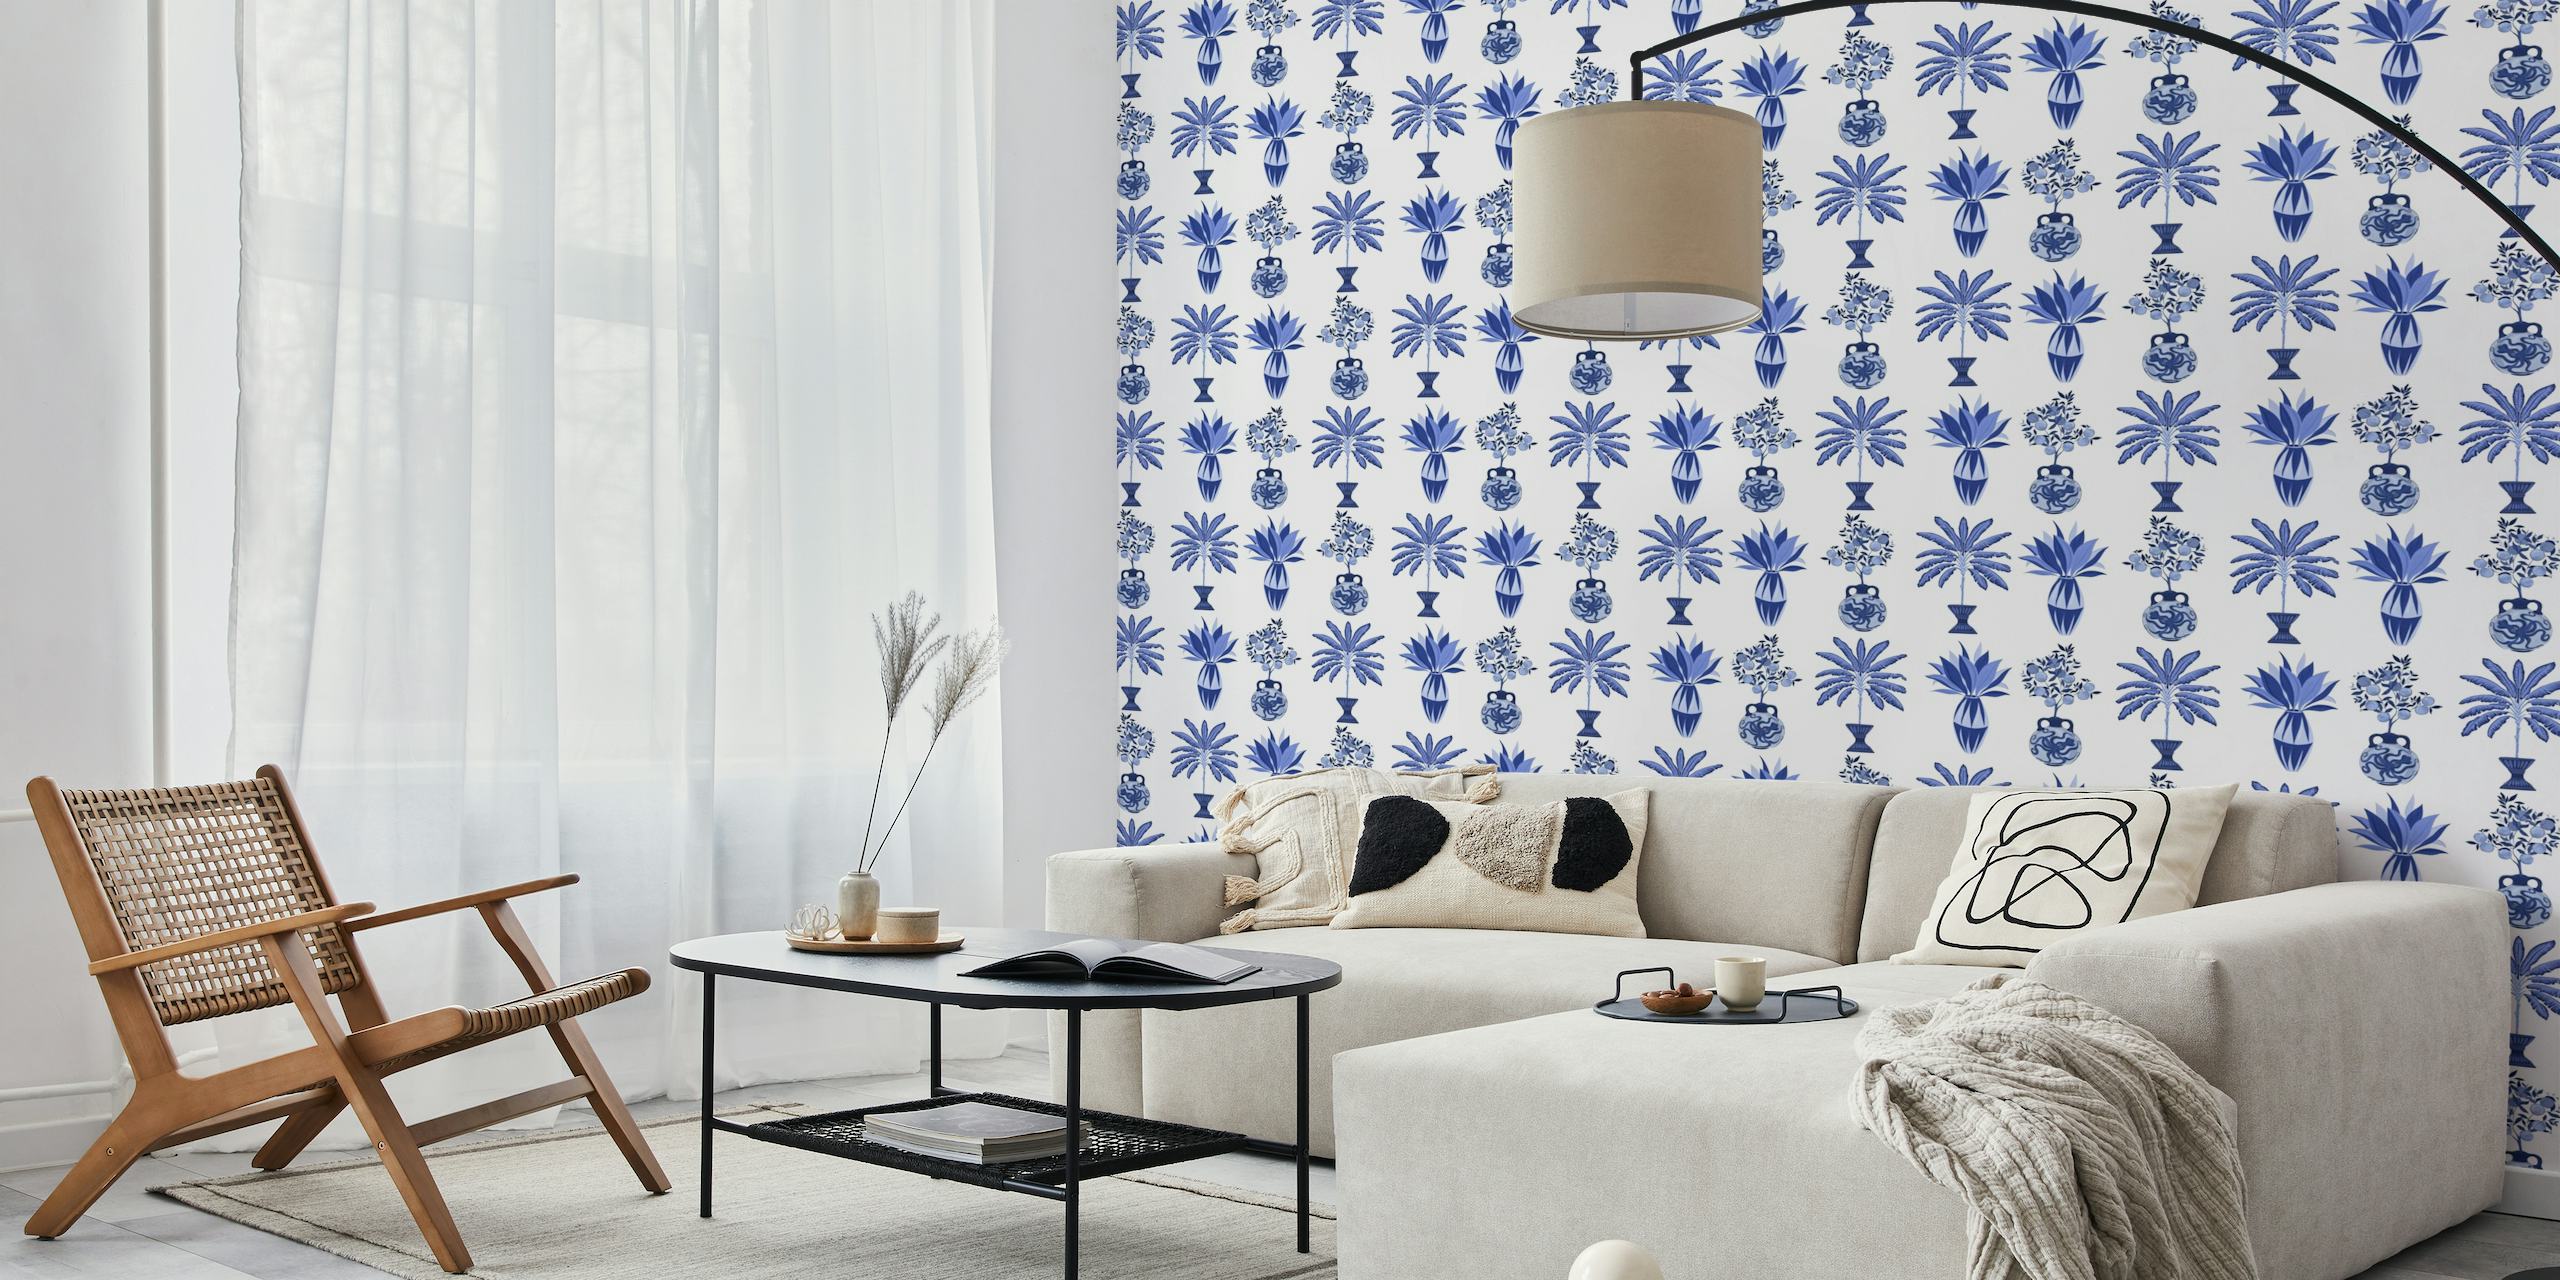 Fototapete mit blauen und weißen mediterranen Vasen und botanischen Motiven